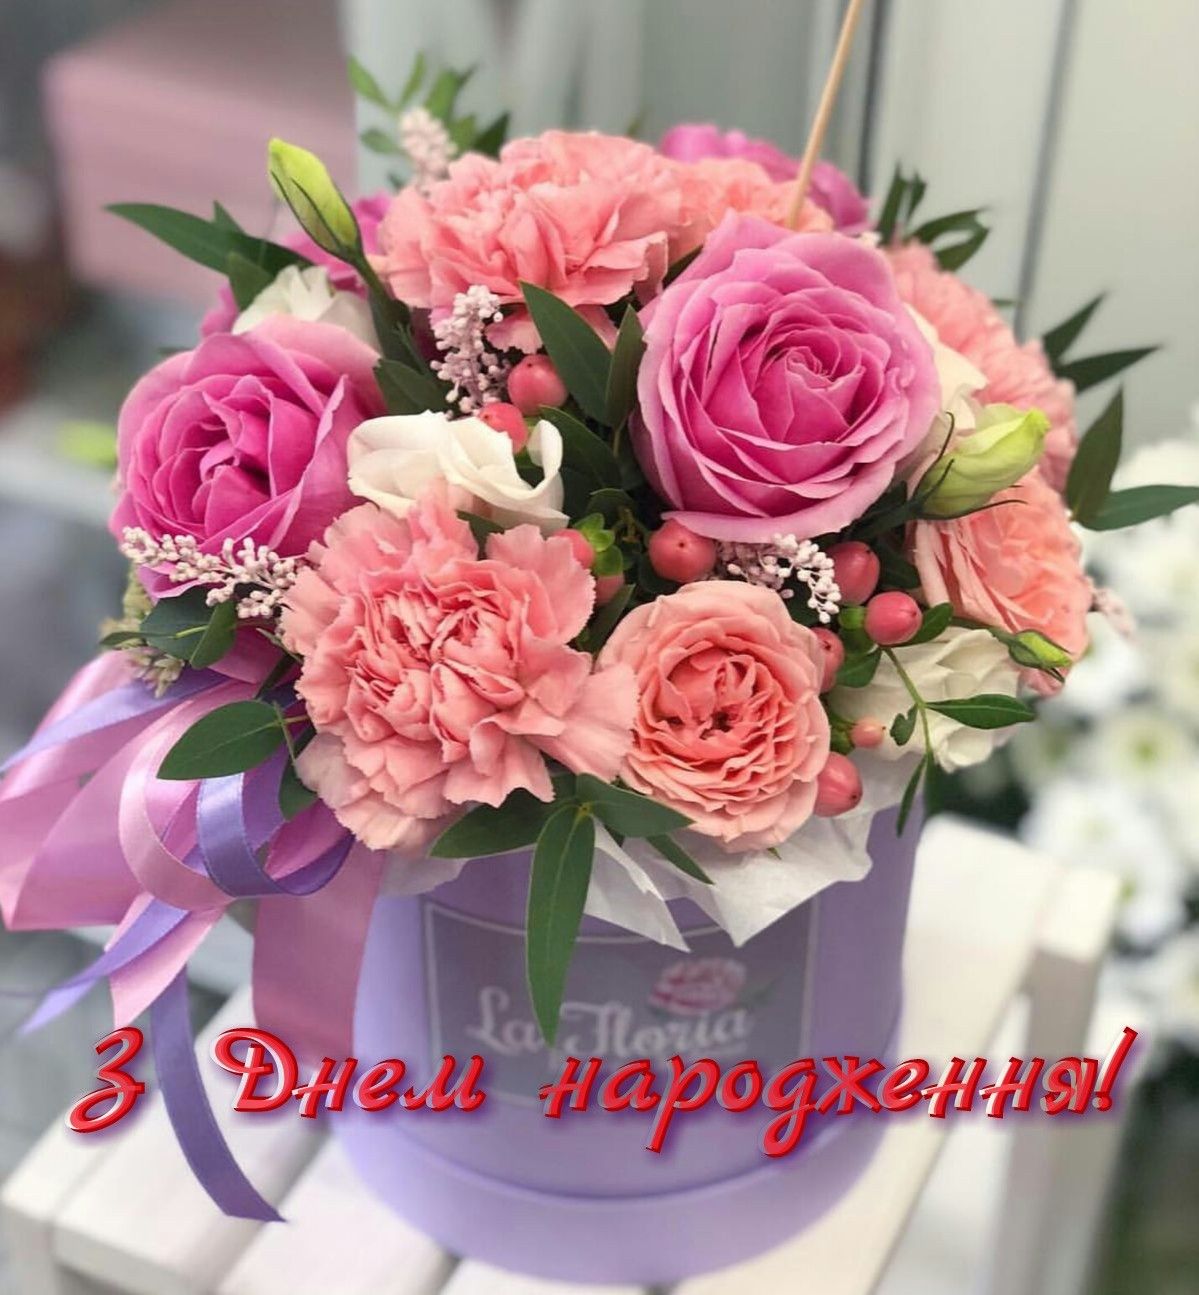 Прикольні привітання з днем народження українською мовою 